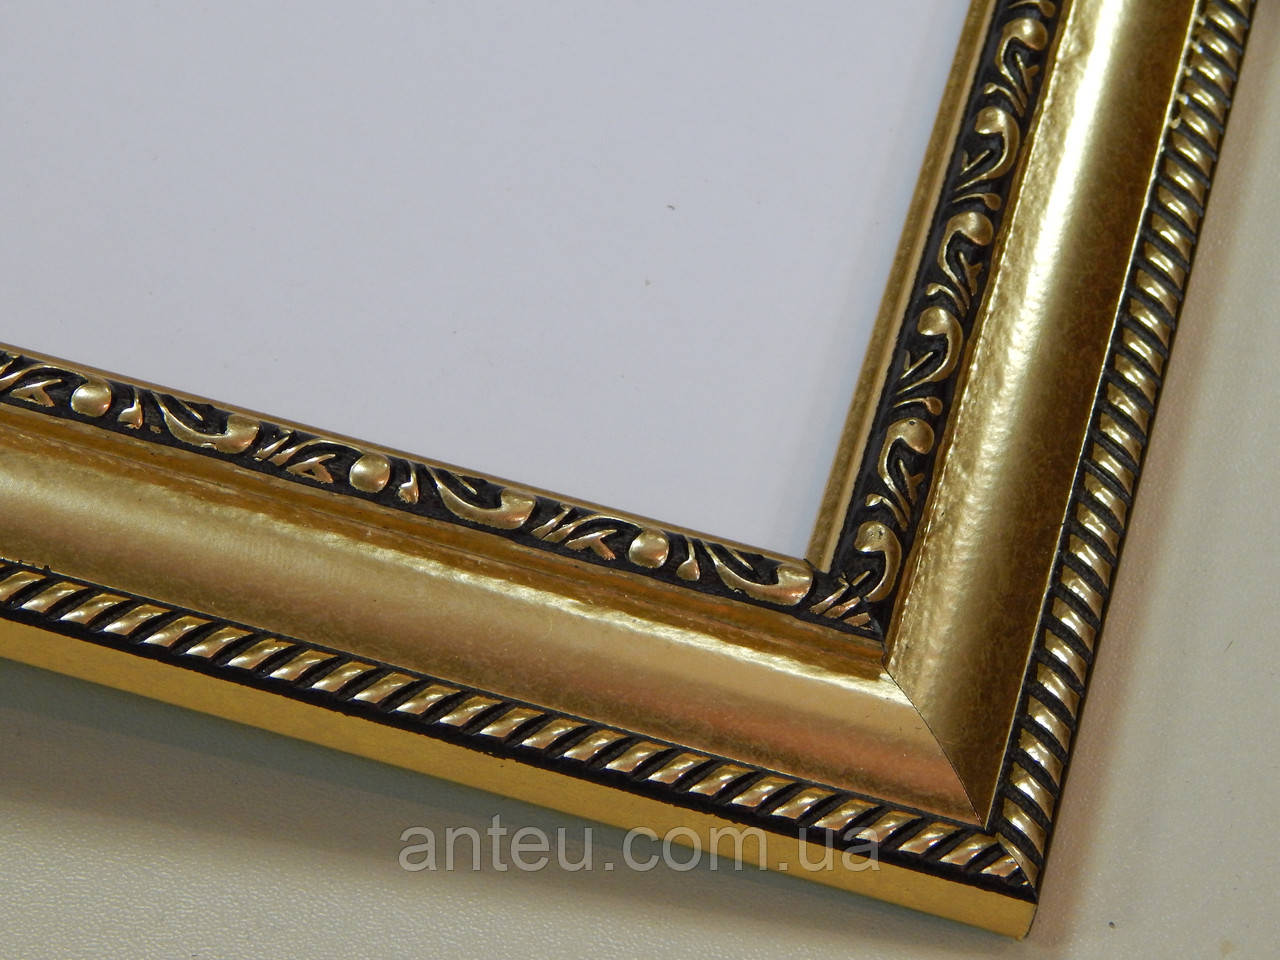 Рамка А2 (420х594). Золота з орнаментом. Профиль 29 мм. Для фото,грамот,картин